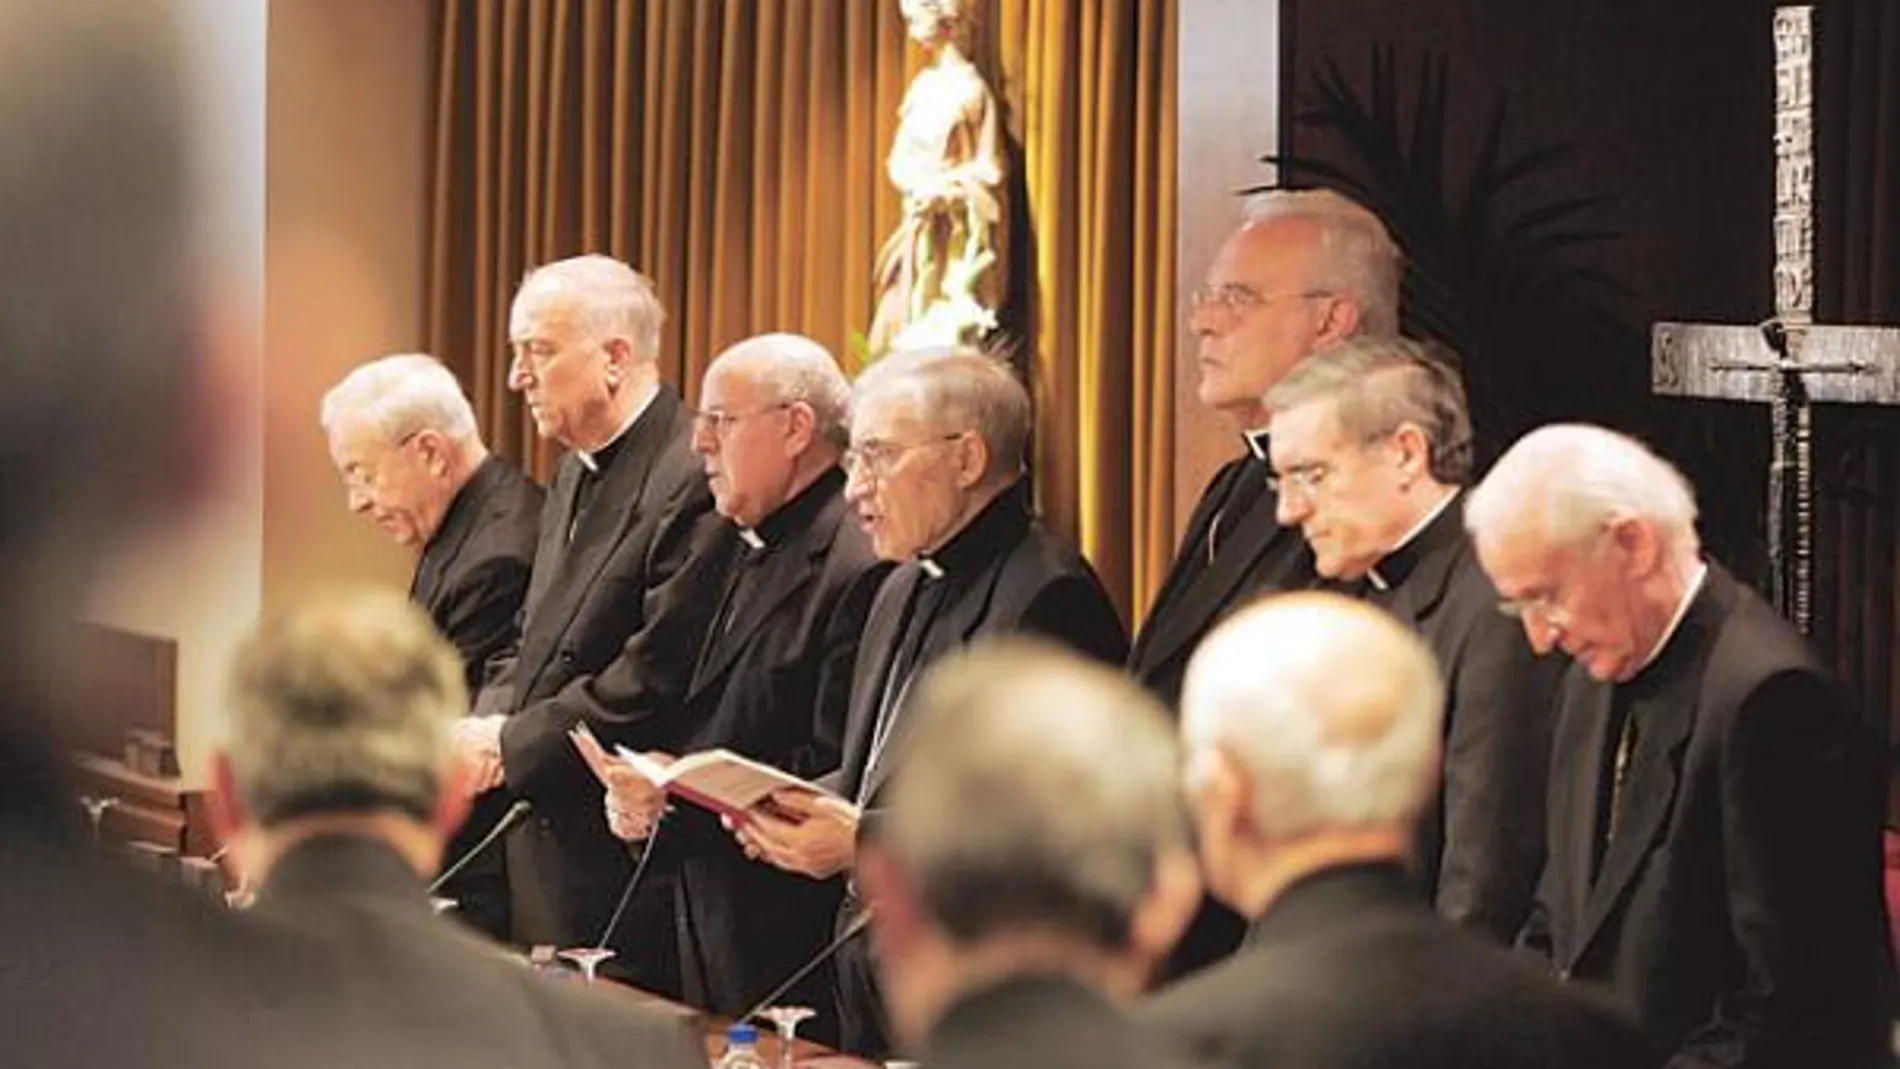 Los obispos en la mesa de presidencia de la Asamblea dirigen la oración inaugural del encuentro